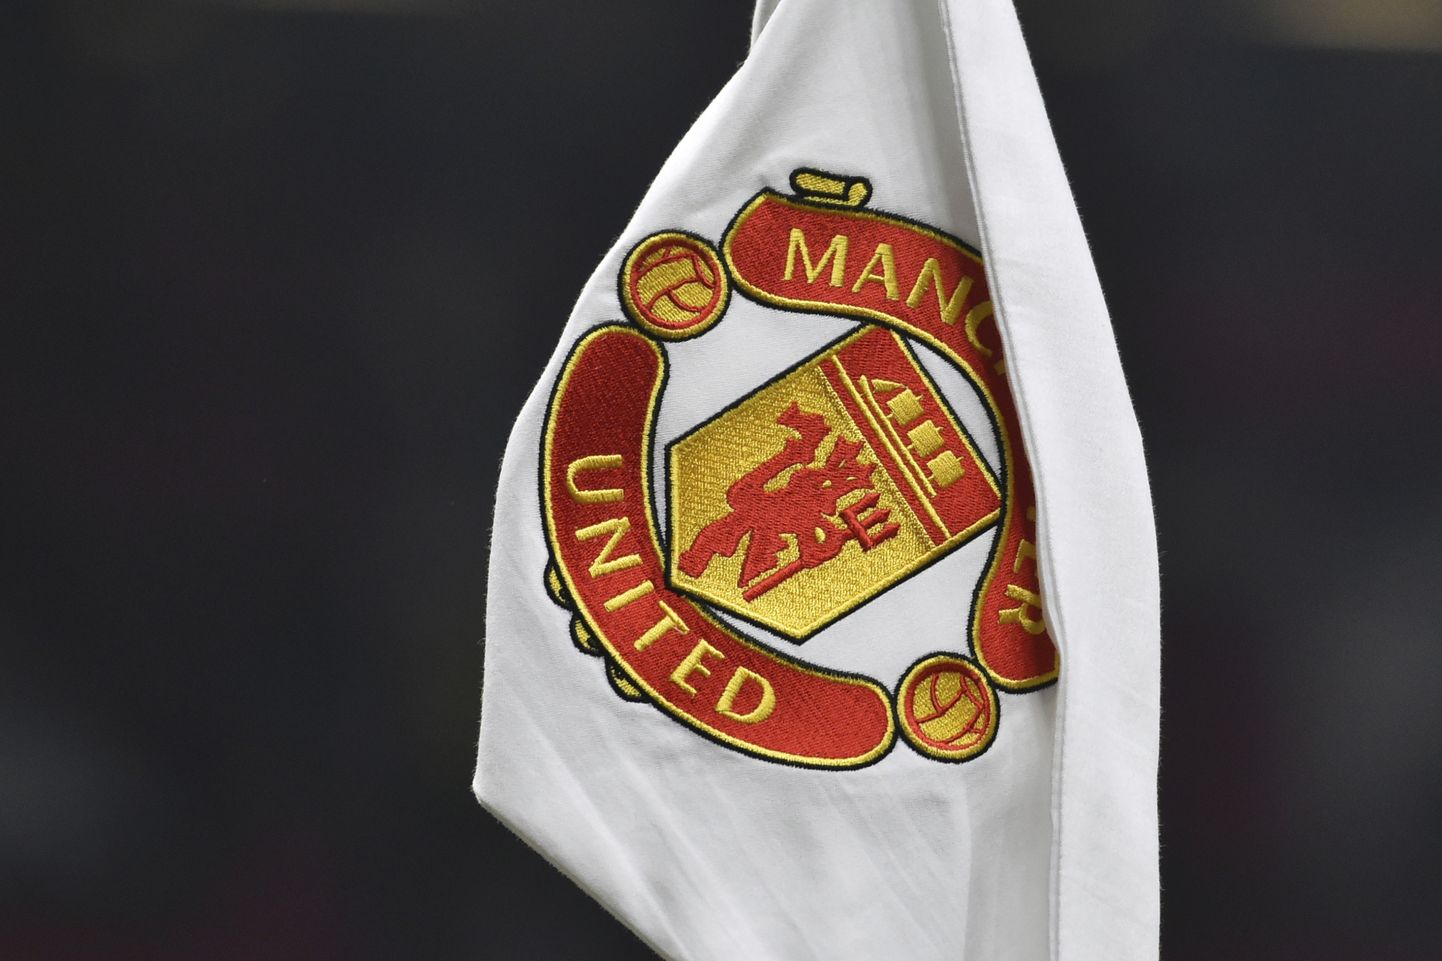 Manchester Unitedi logo.